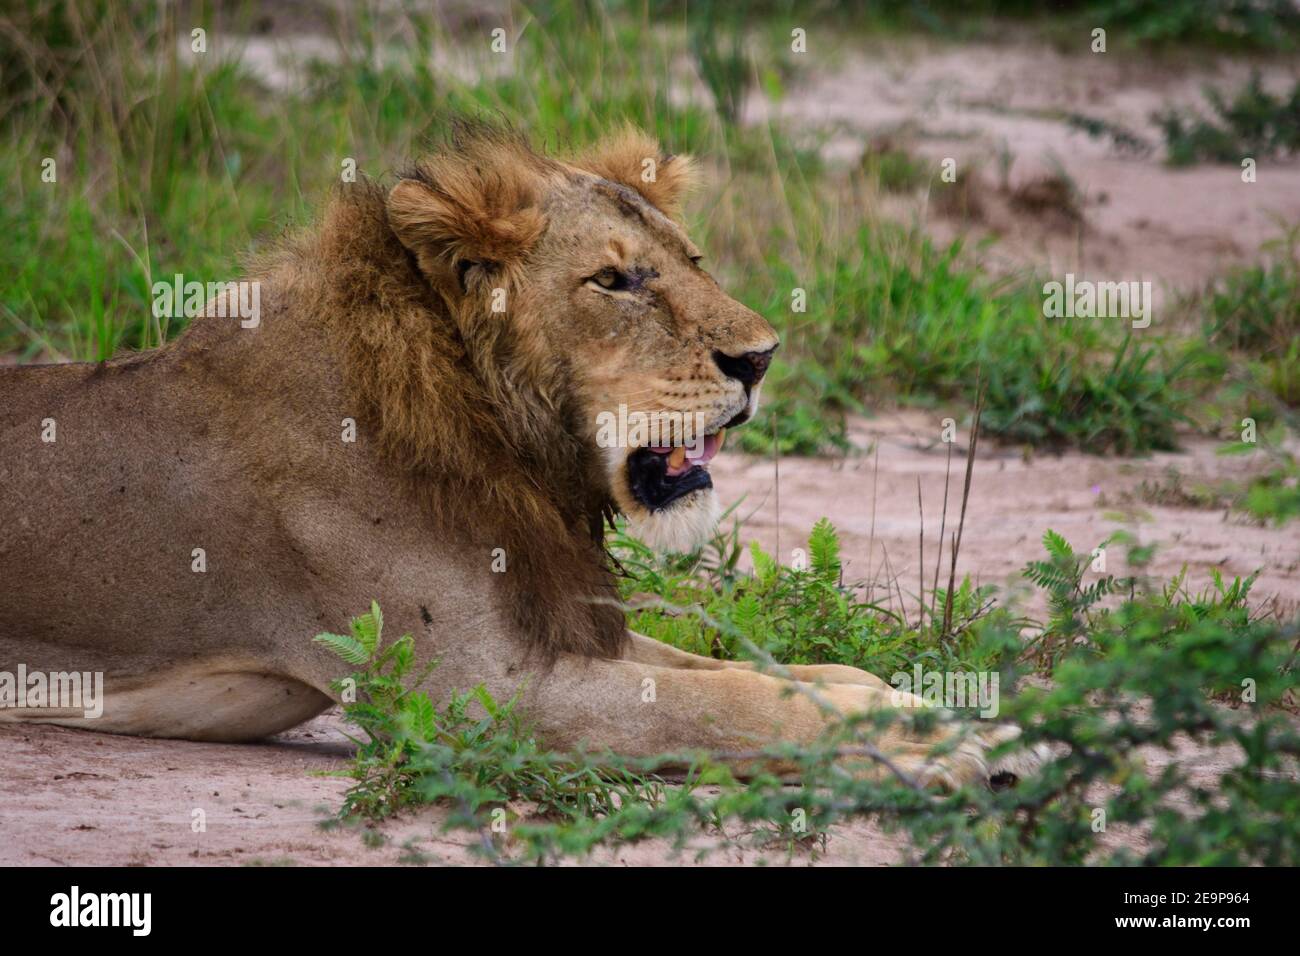 leone rilassato cerca cibo e animali a caccia Foto Stock